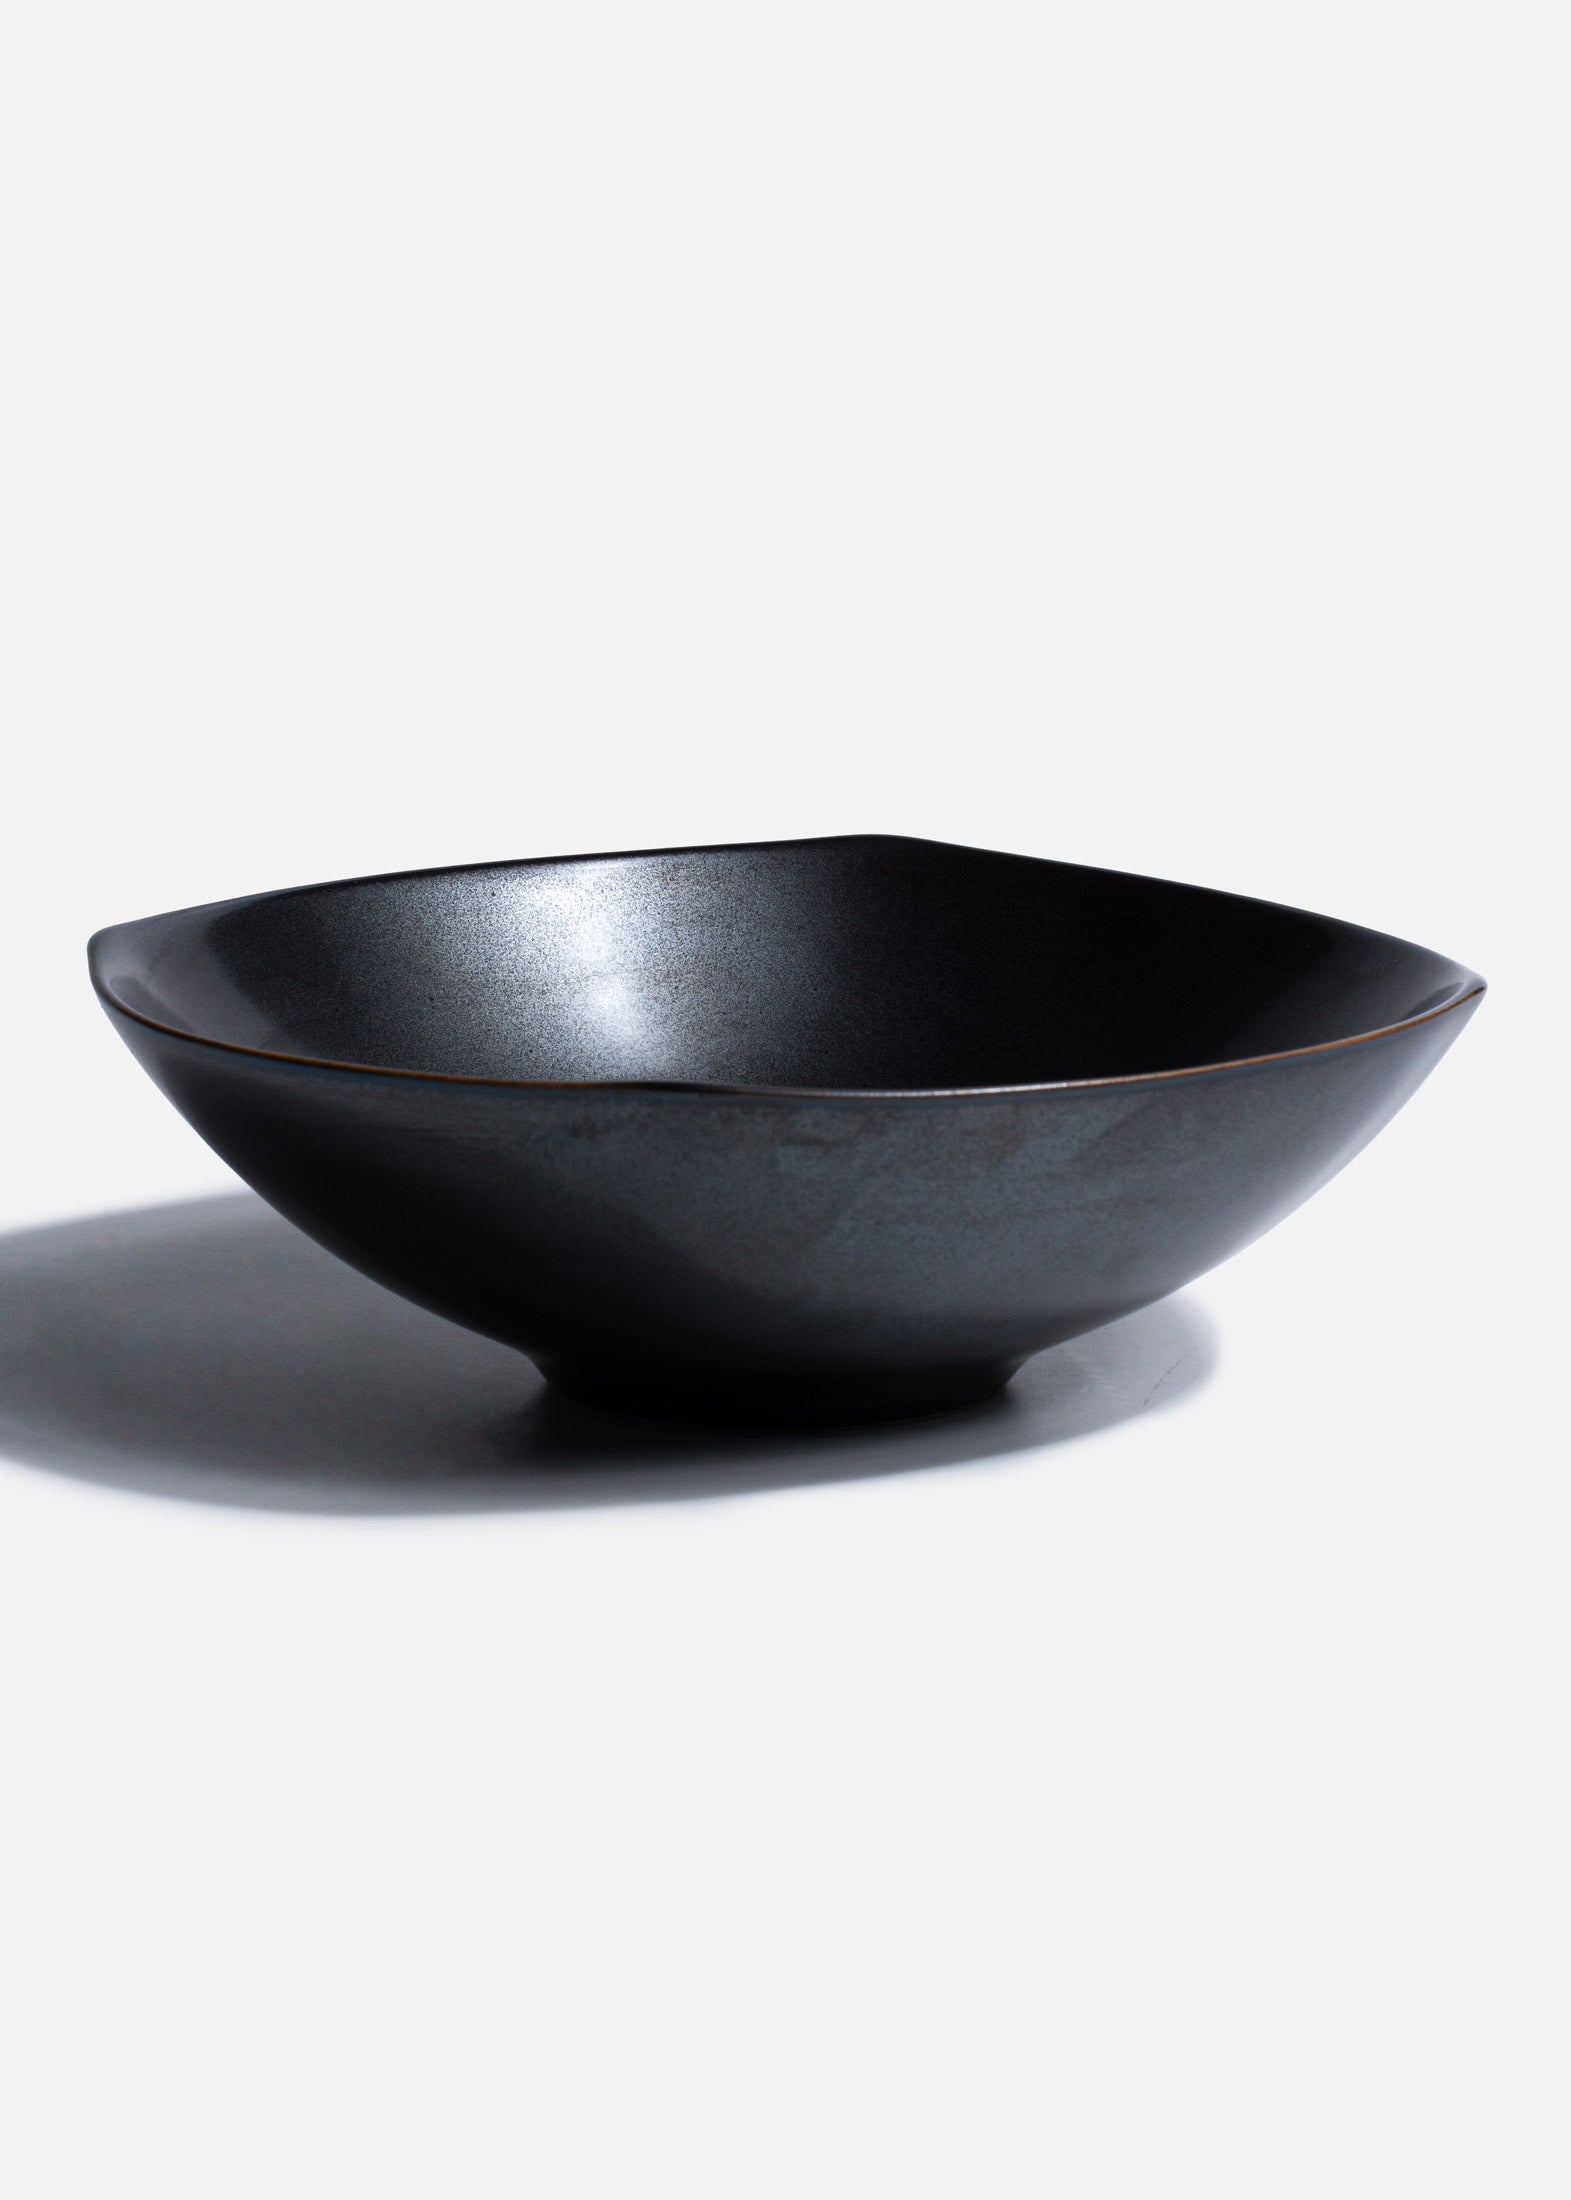 comprar bowl cuadrado negro mahahome